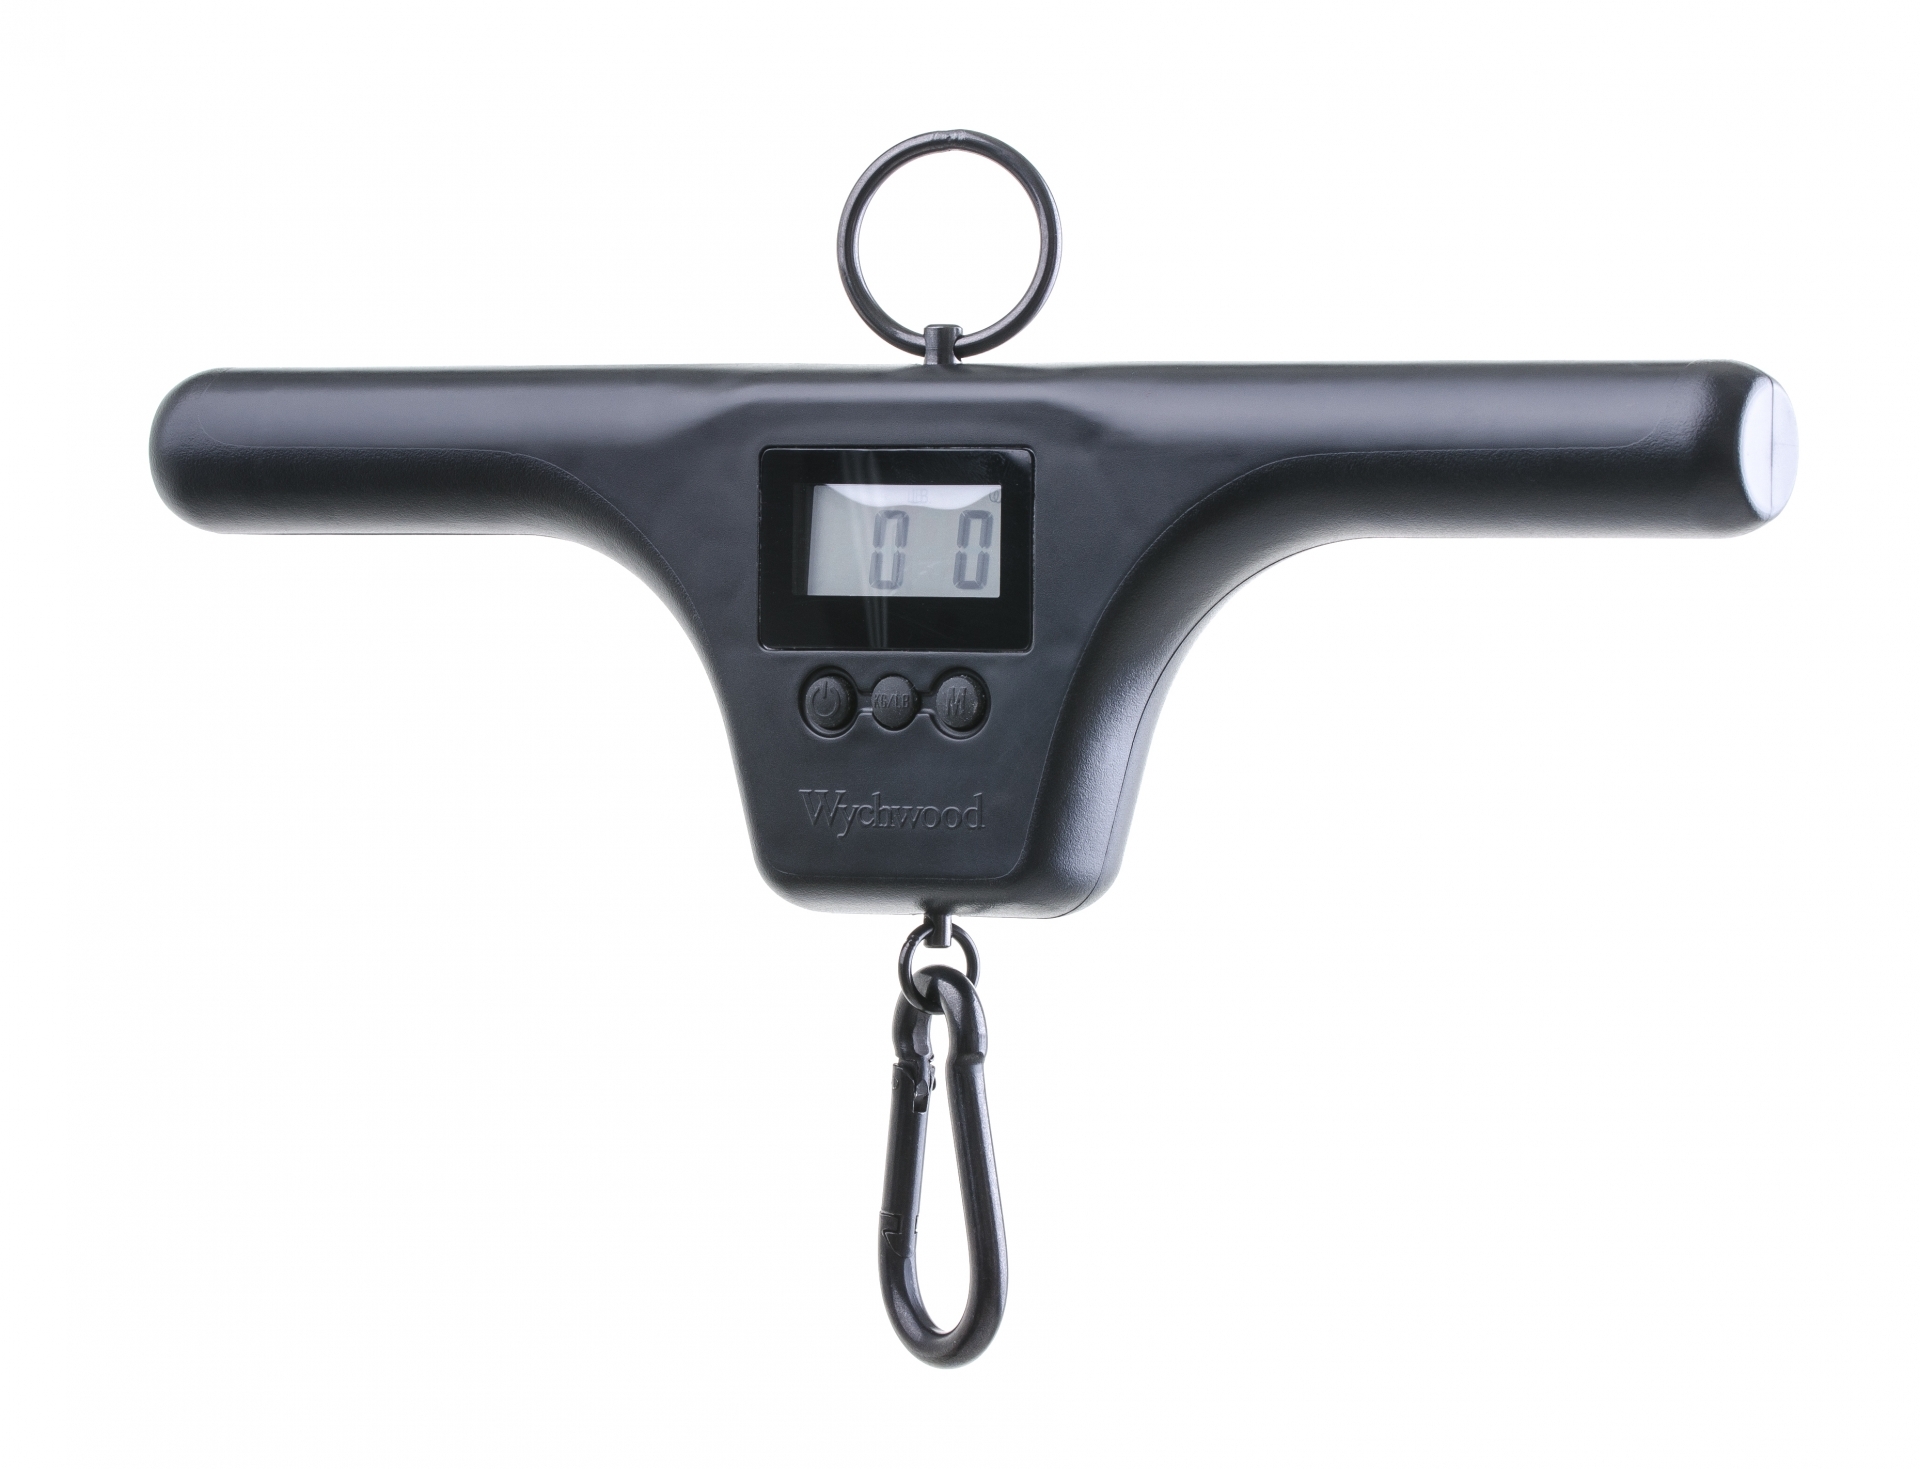 Купить весы для рыбалки. Весы Wychwood t-Bar Scales Dual Screen. Весы Rapala электронные 25 кг.. Электронный безмен Rapala rcdds25. Весы электронные карповые рыболовные Carp Pro Digital Scales вес до 50 кг.